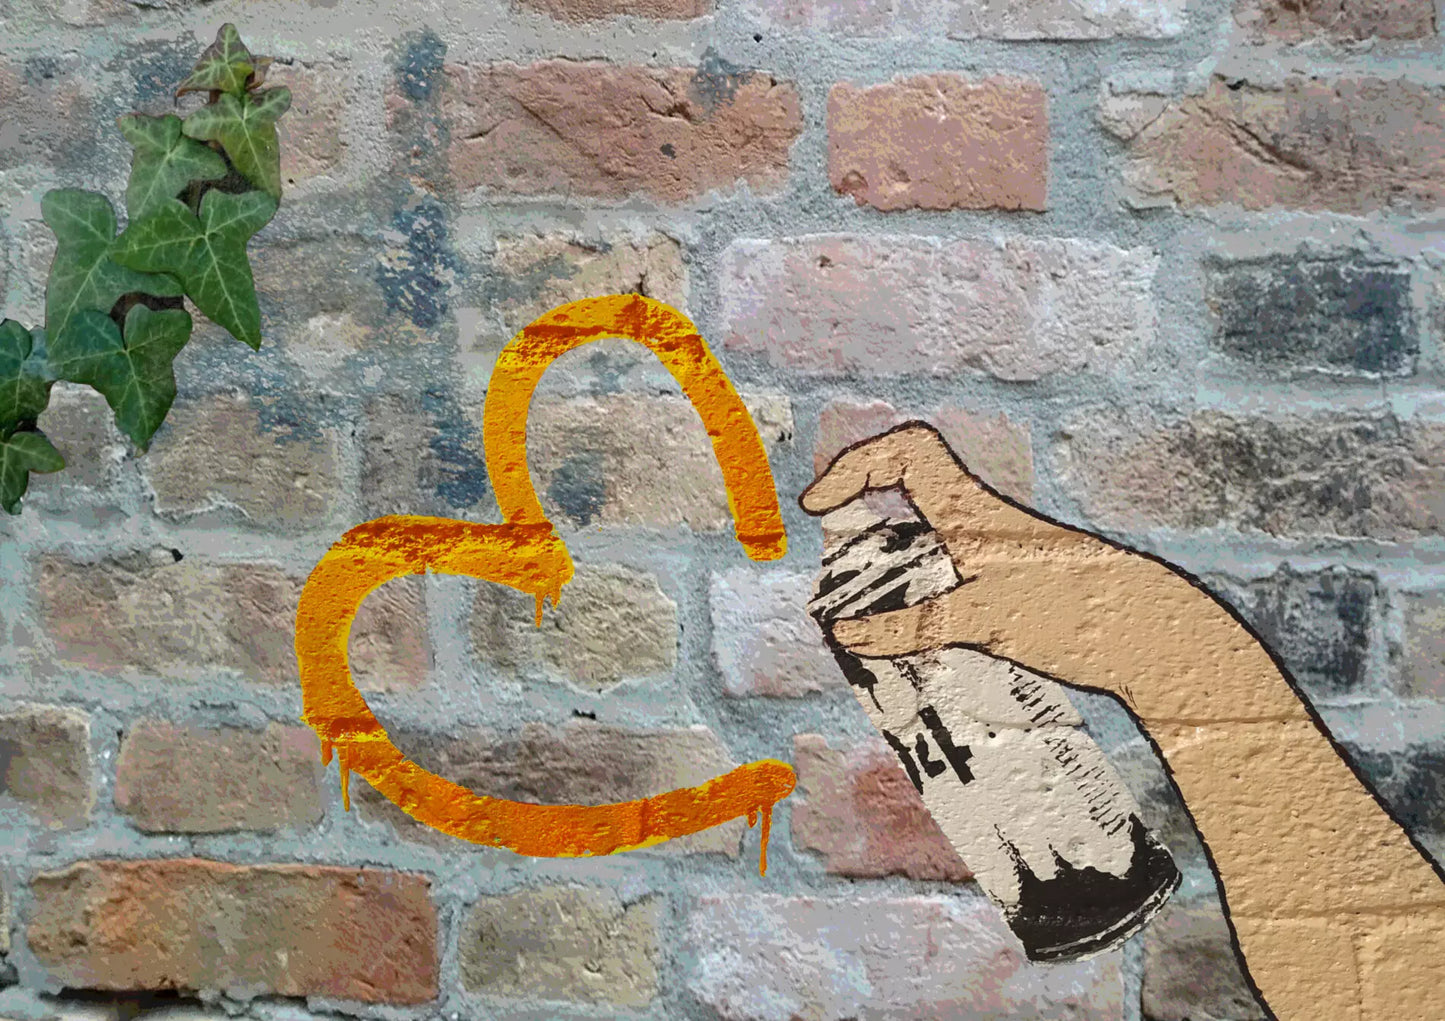 Spread Love Orange di Shife. Stampa giclée stampa giclée su carta 320 gsm edizione limitata rappresentante una bomboletta spray che disegna un cuore | Cd Studio d'Arte